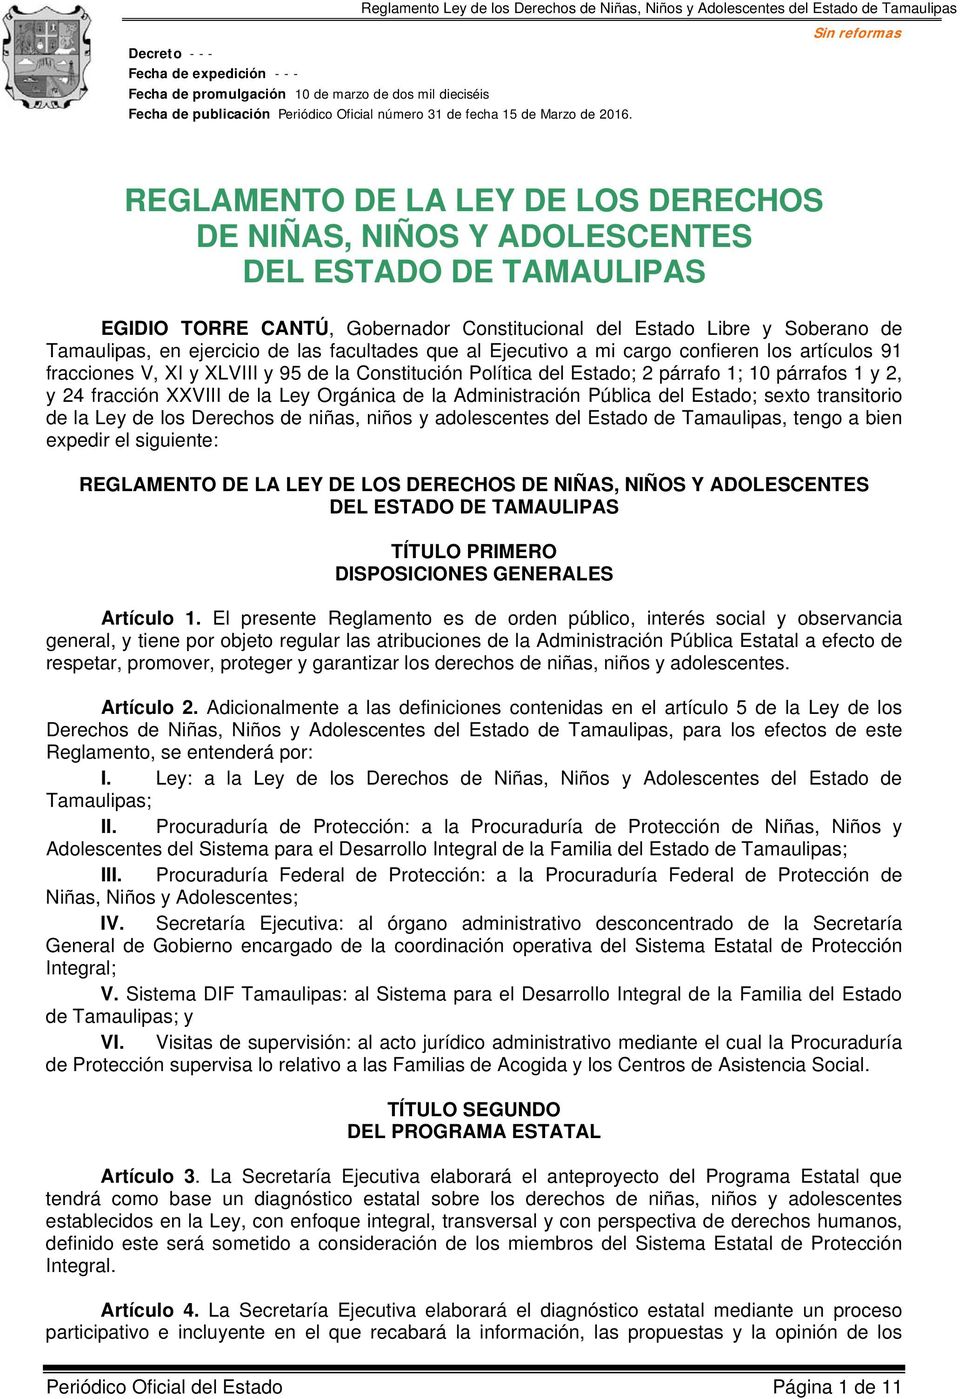 Ley Orgánica de la Administración Pública del Estado; sexto transitorio de la Ley de los Derechos de niñas, niños y adolescentes del Estado de Tamaulipas, tengo a bien expedir el siguiente: